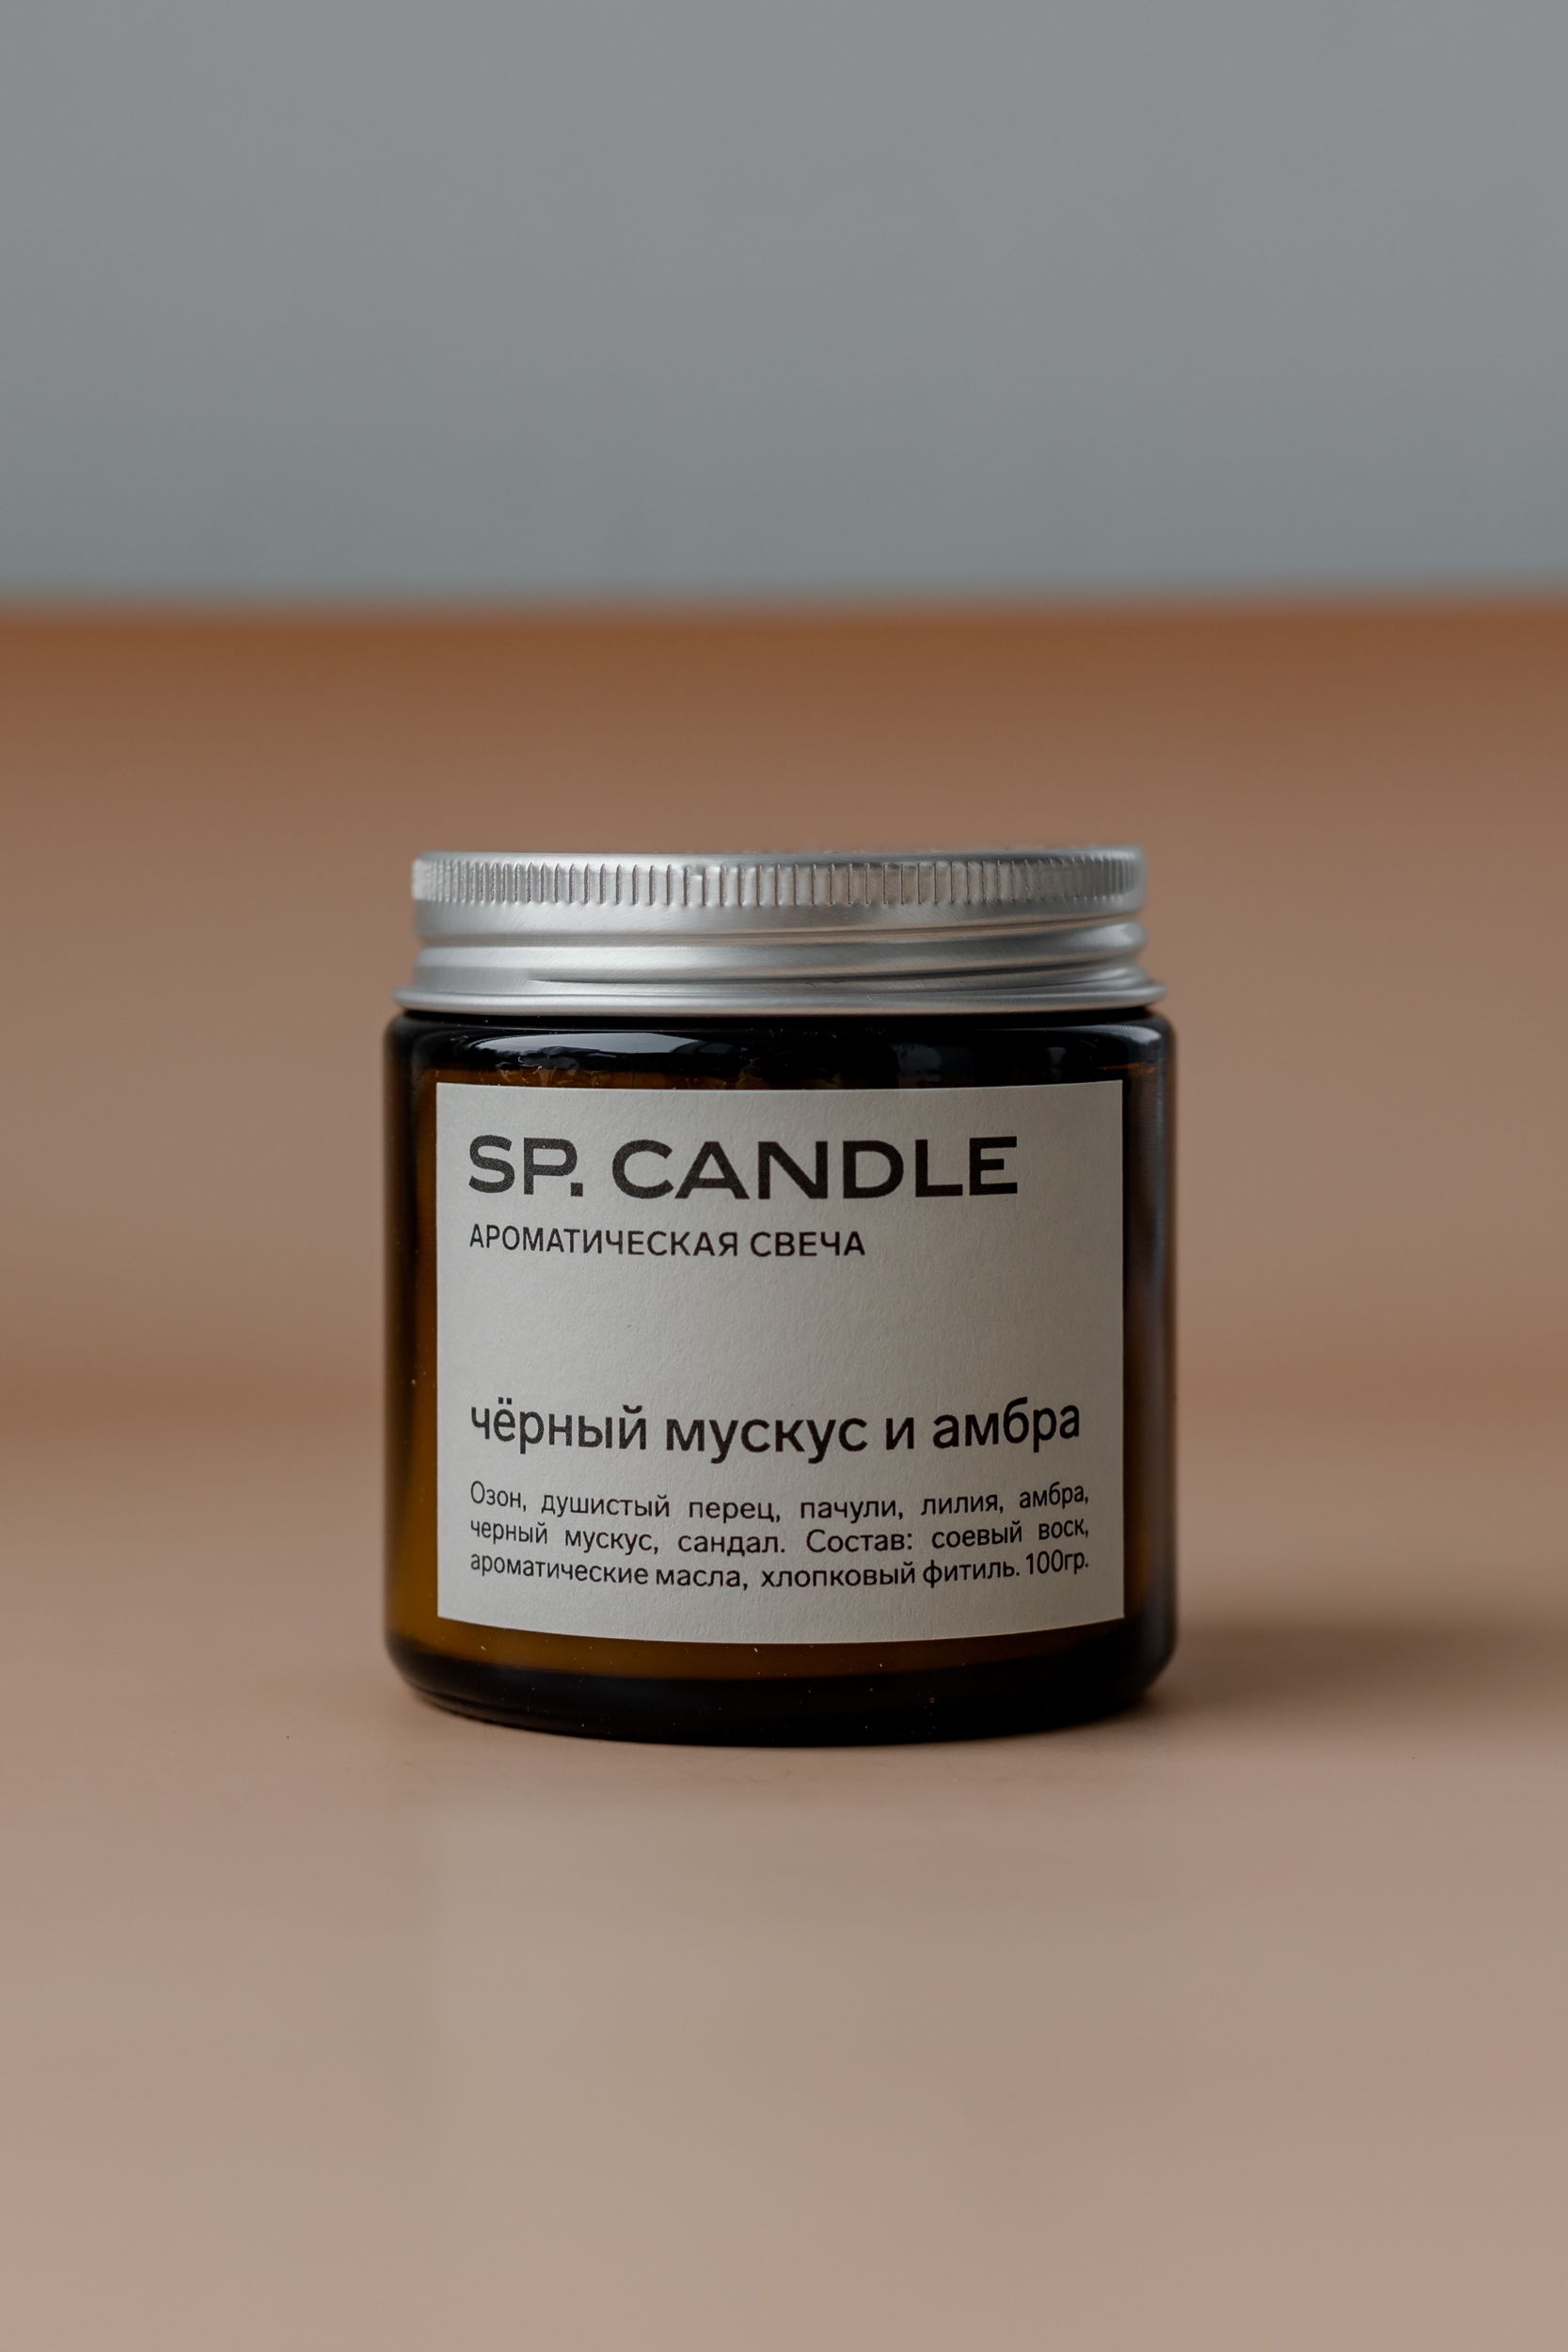 SP. CANDLE Ароматическая свеча Черный мускус и амбра, 100г